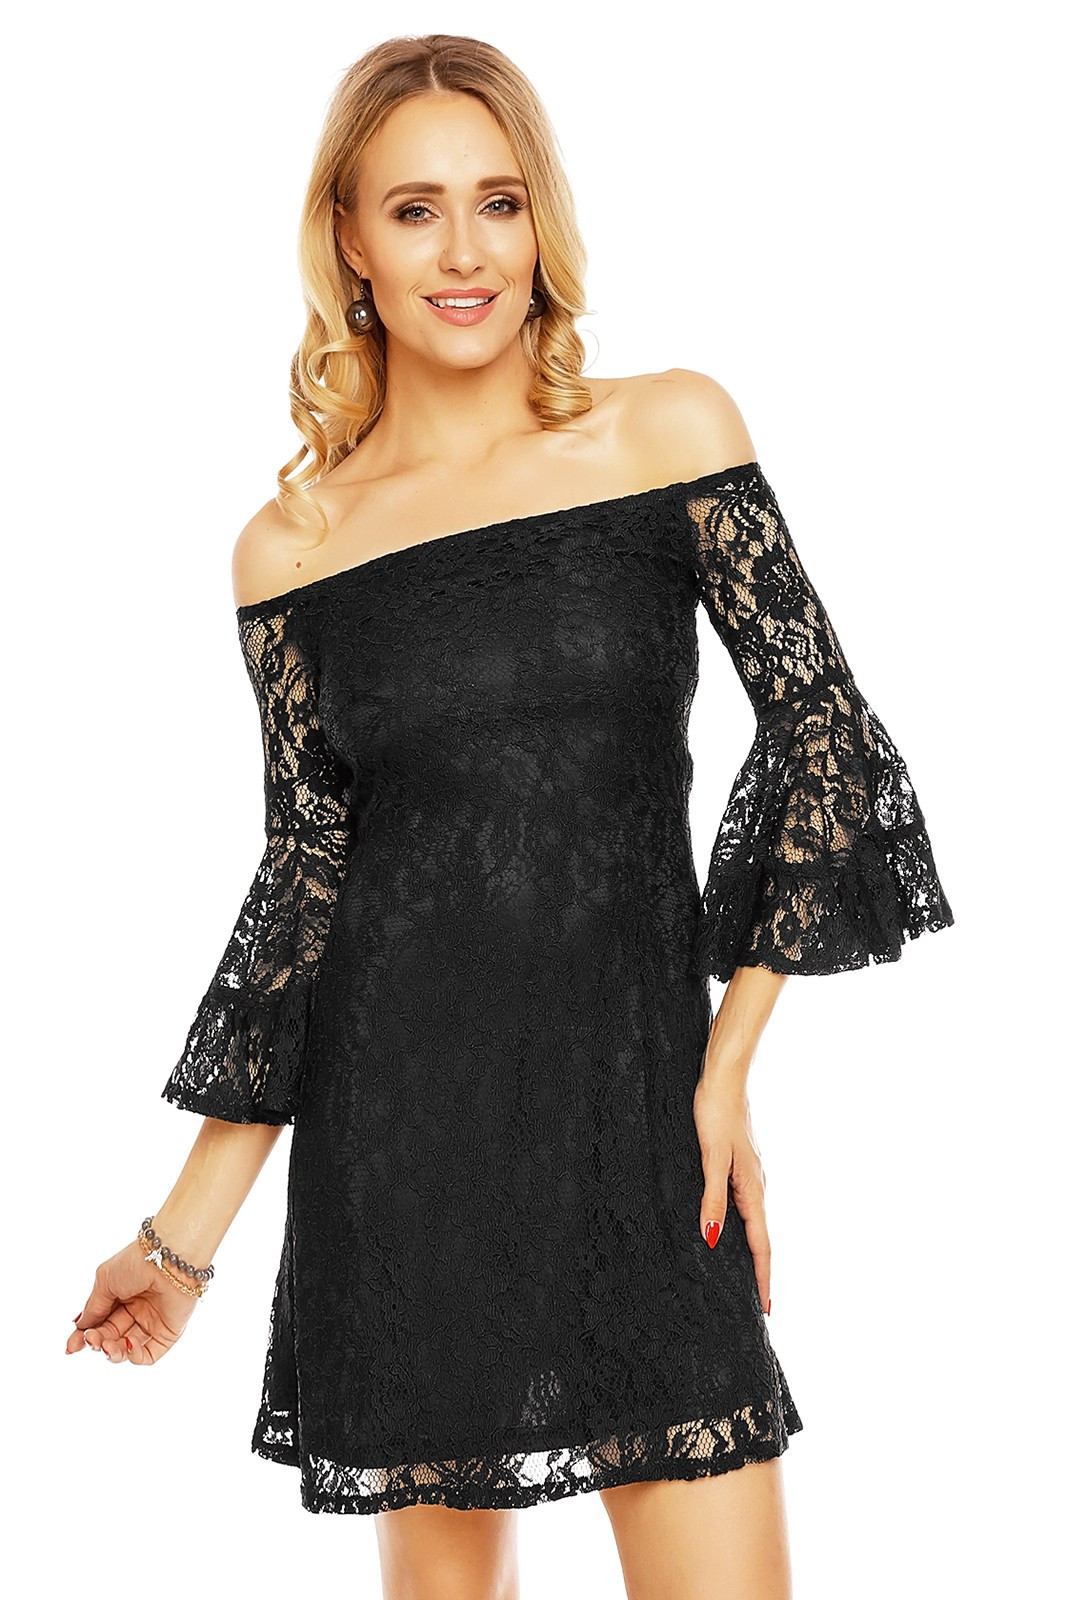 Krajkové dámské šaty s lodičkovým výstřihem a širokými rukávy - MAYAADI černá XL